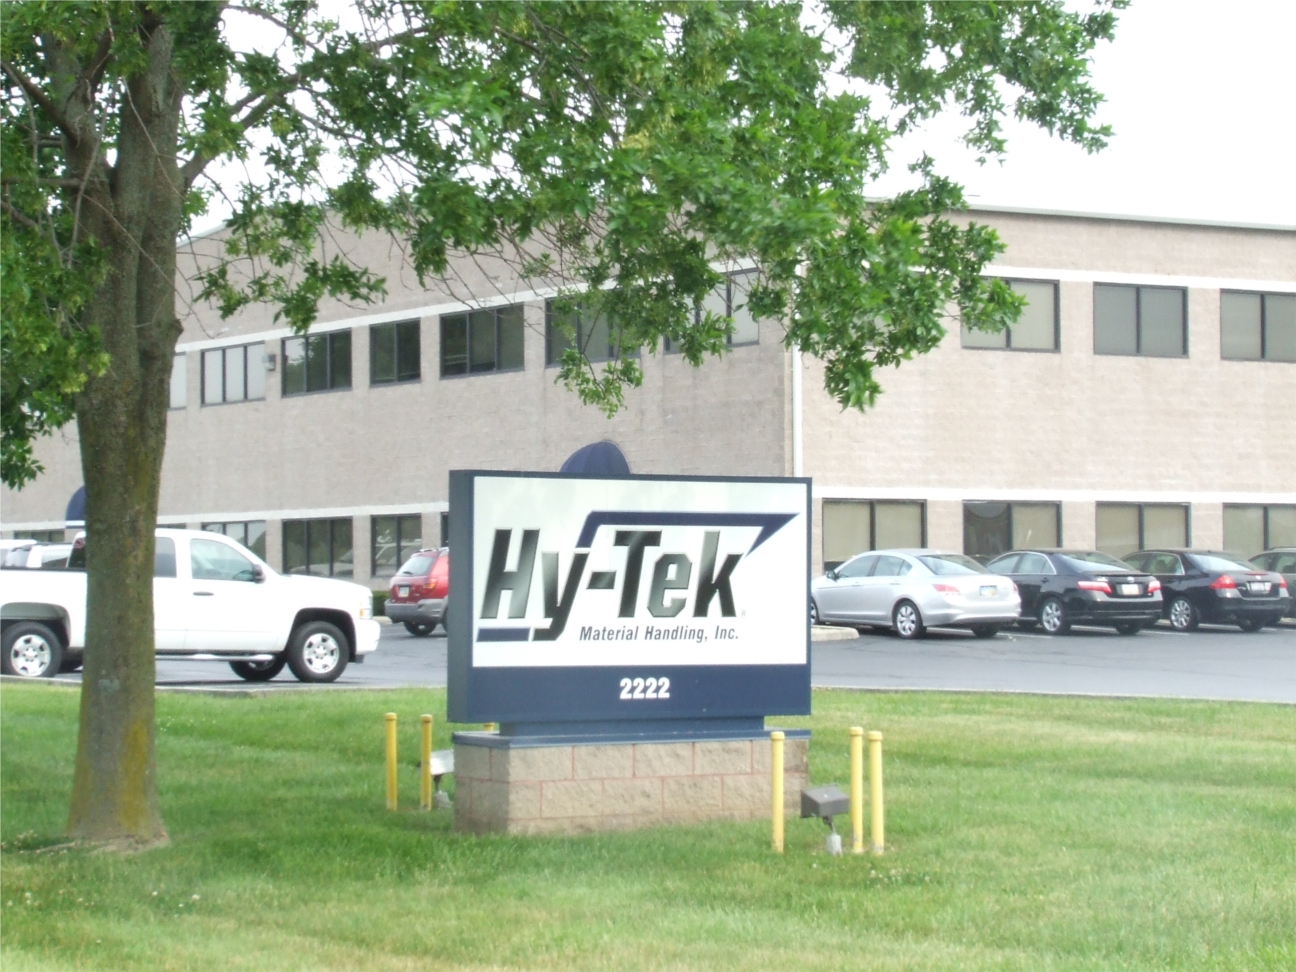 Hy-Tek Material Handling, Inc. headquarters, Columbus, OH